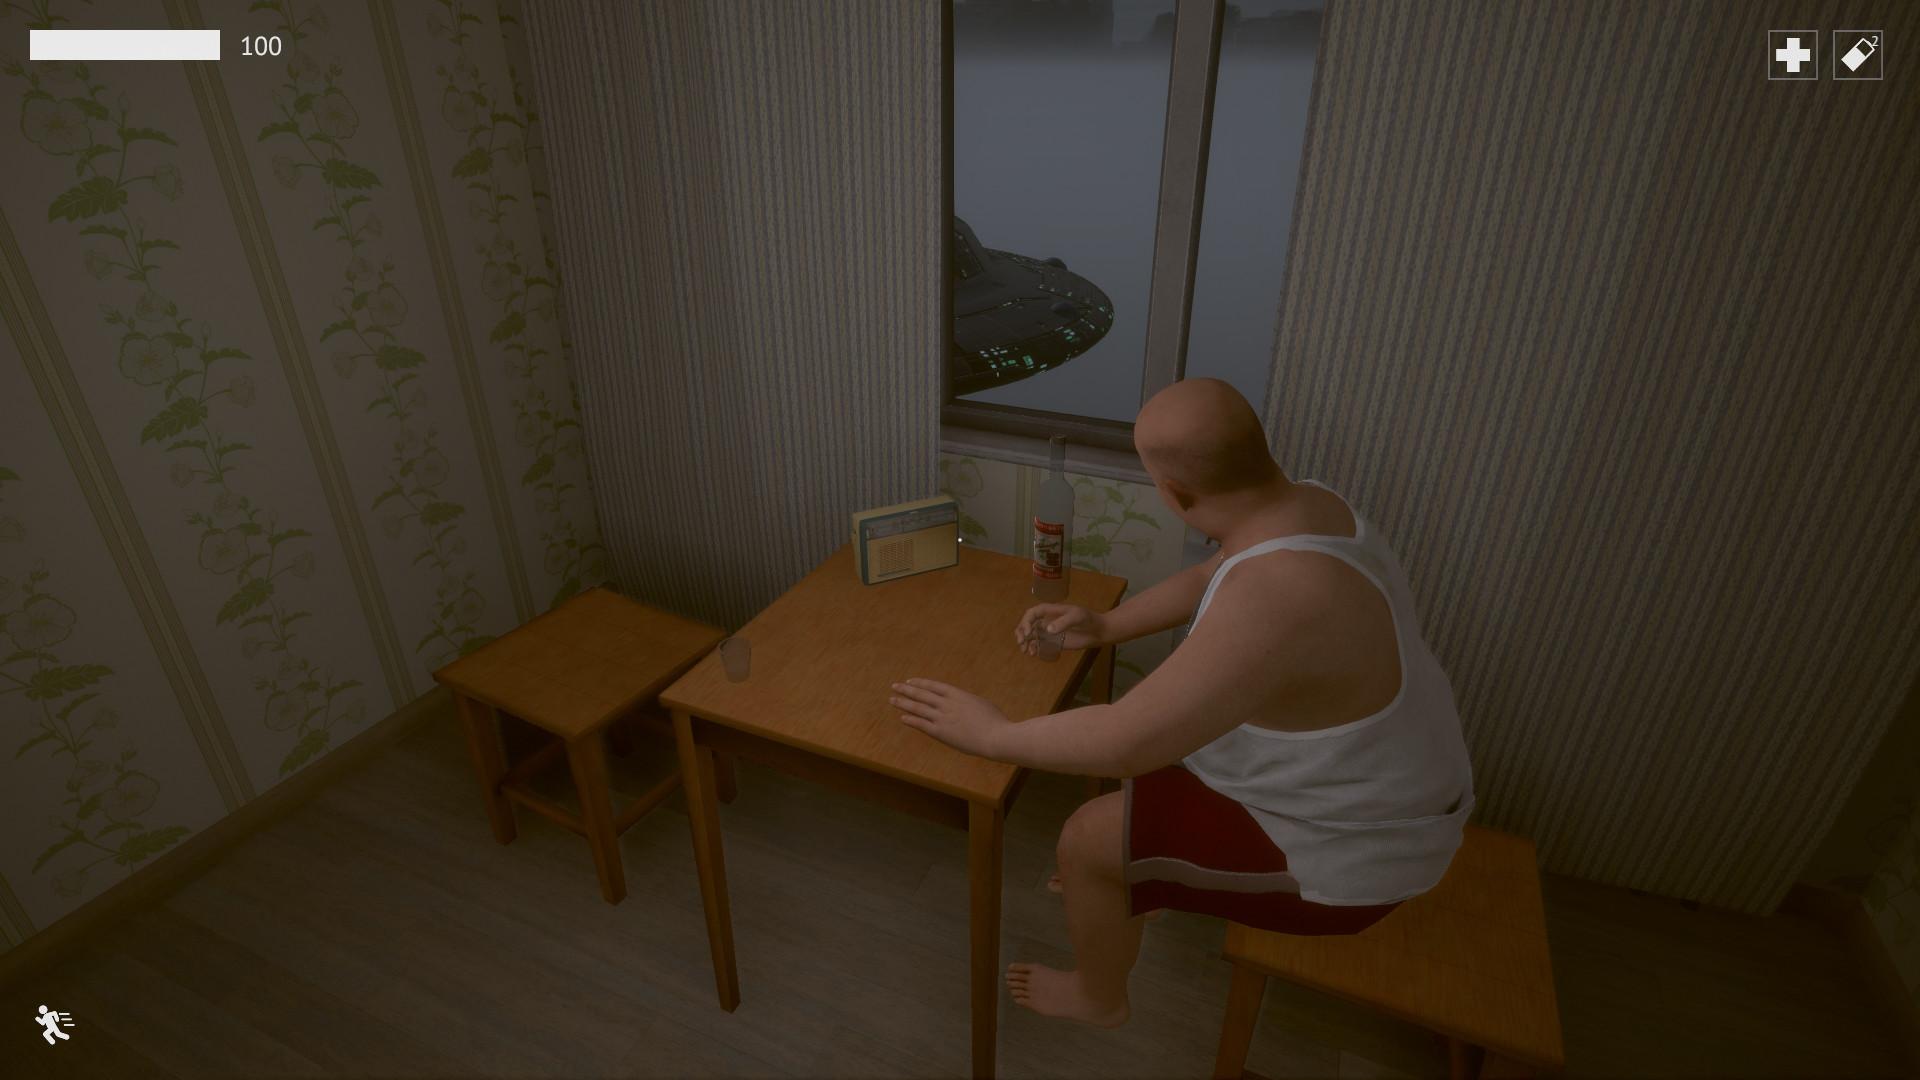 Screenshot №5 from game Last Floor